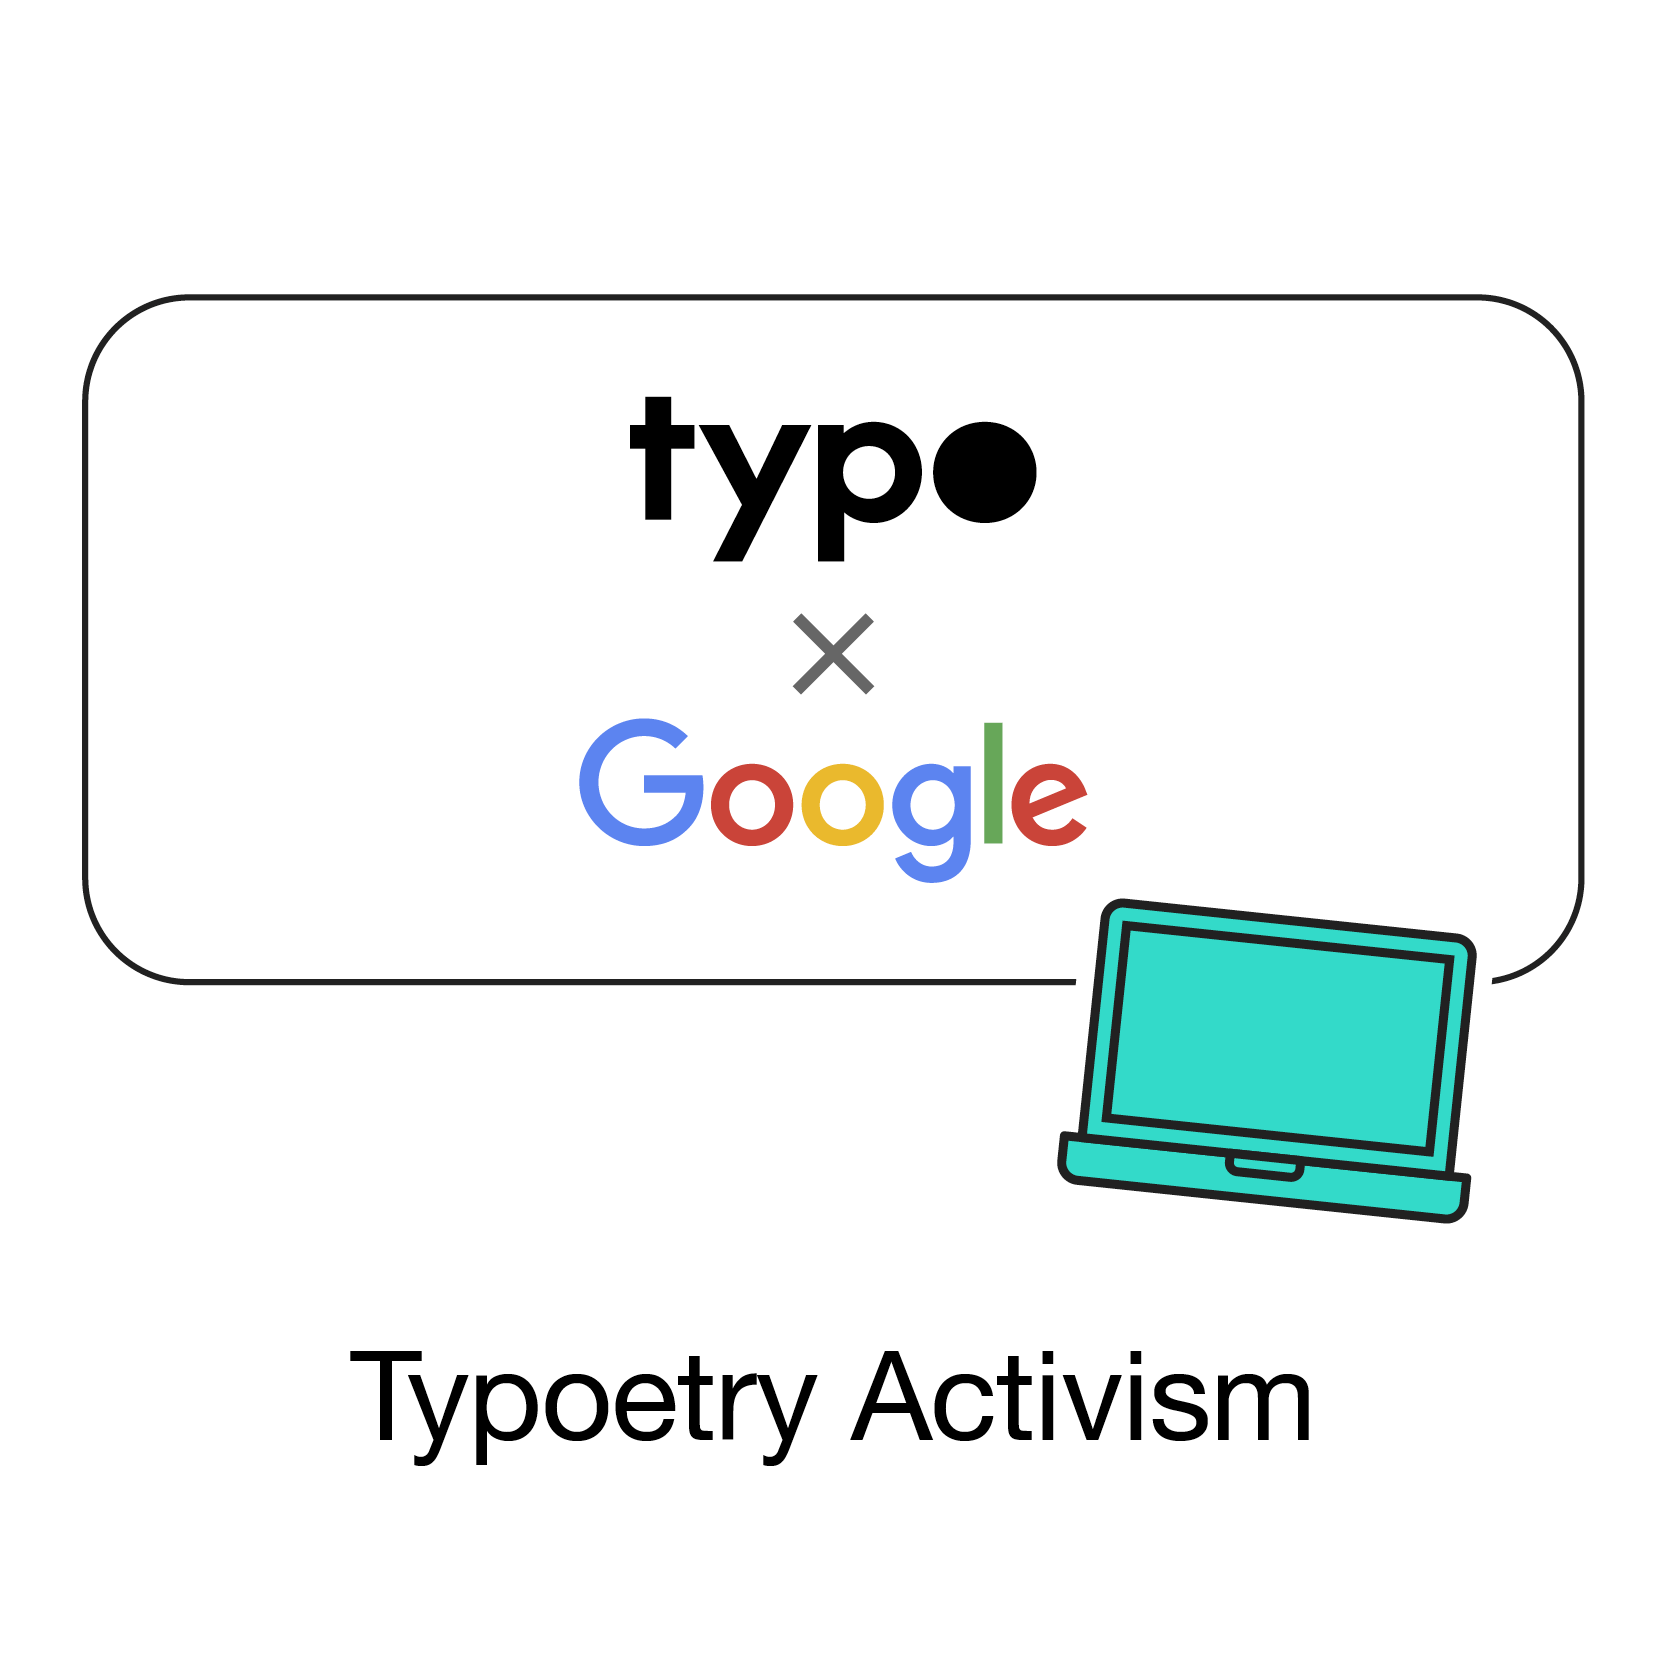 Typo x Google